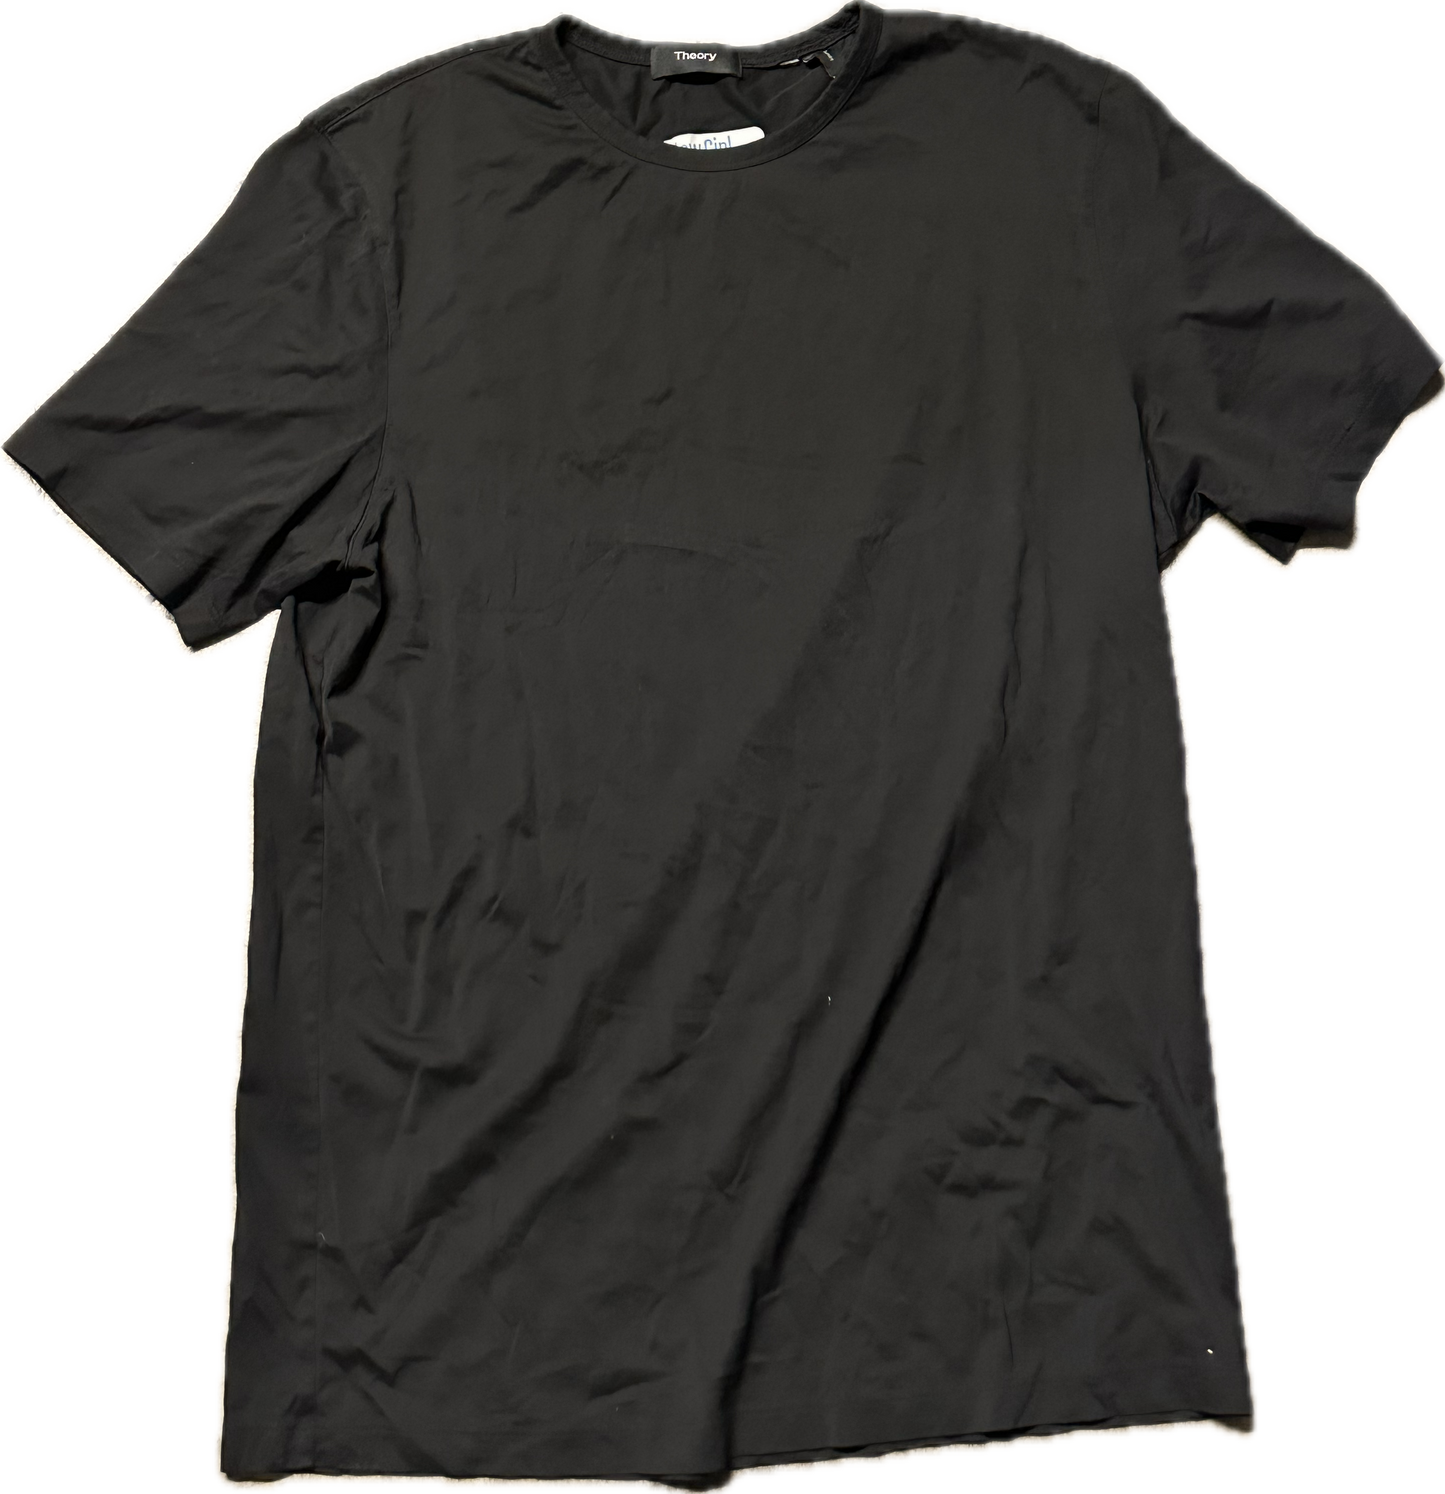 NEW GIRL: Nick Miller's HERO Black T-shirt (M)